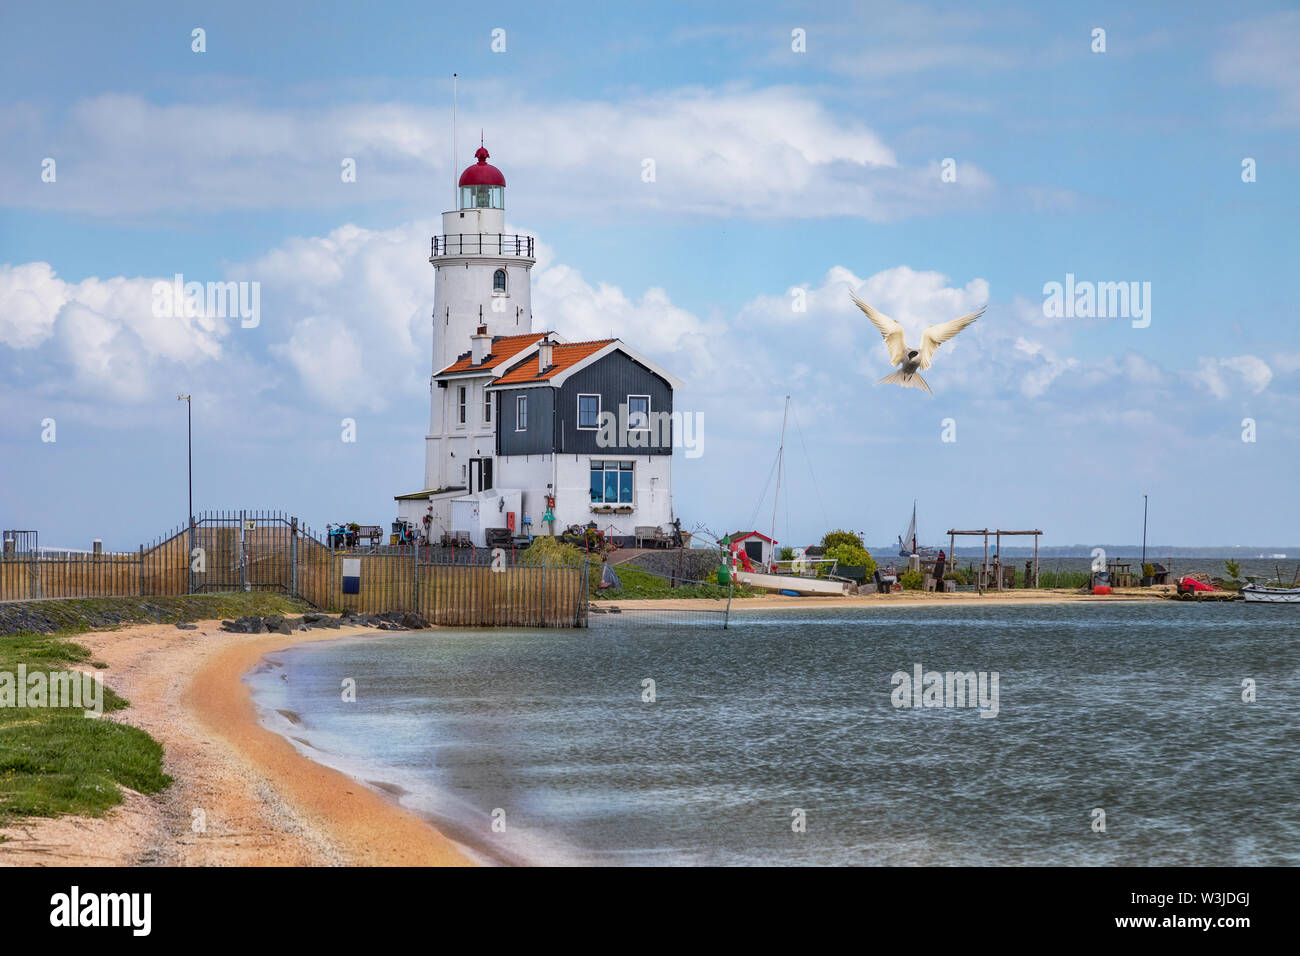 Le phare de Marken, une petite île de la mer du Nord aux Pays-Bas Banque D'Images